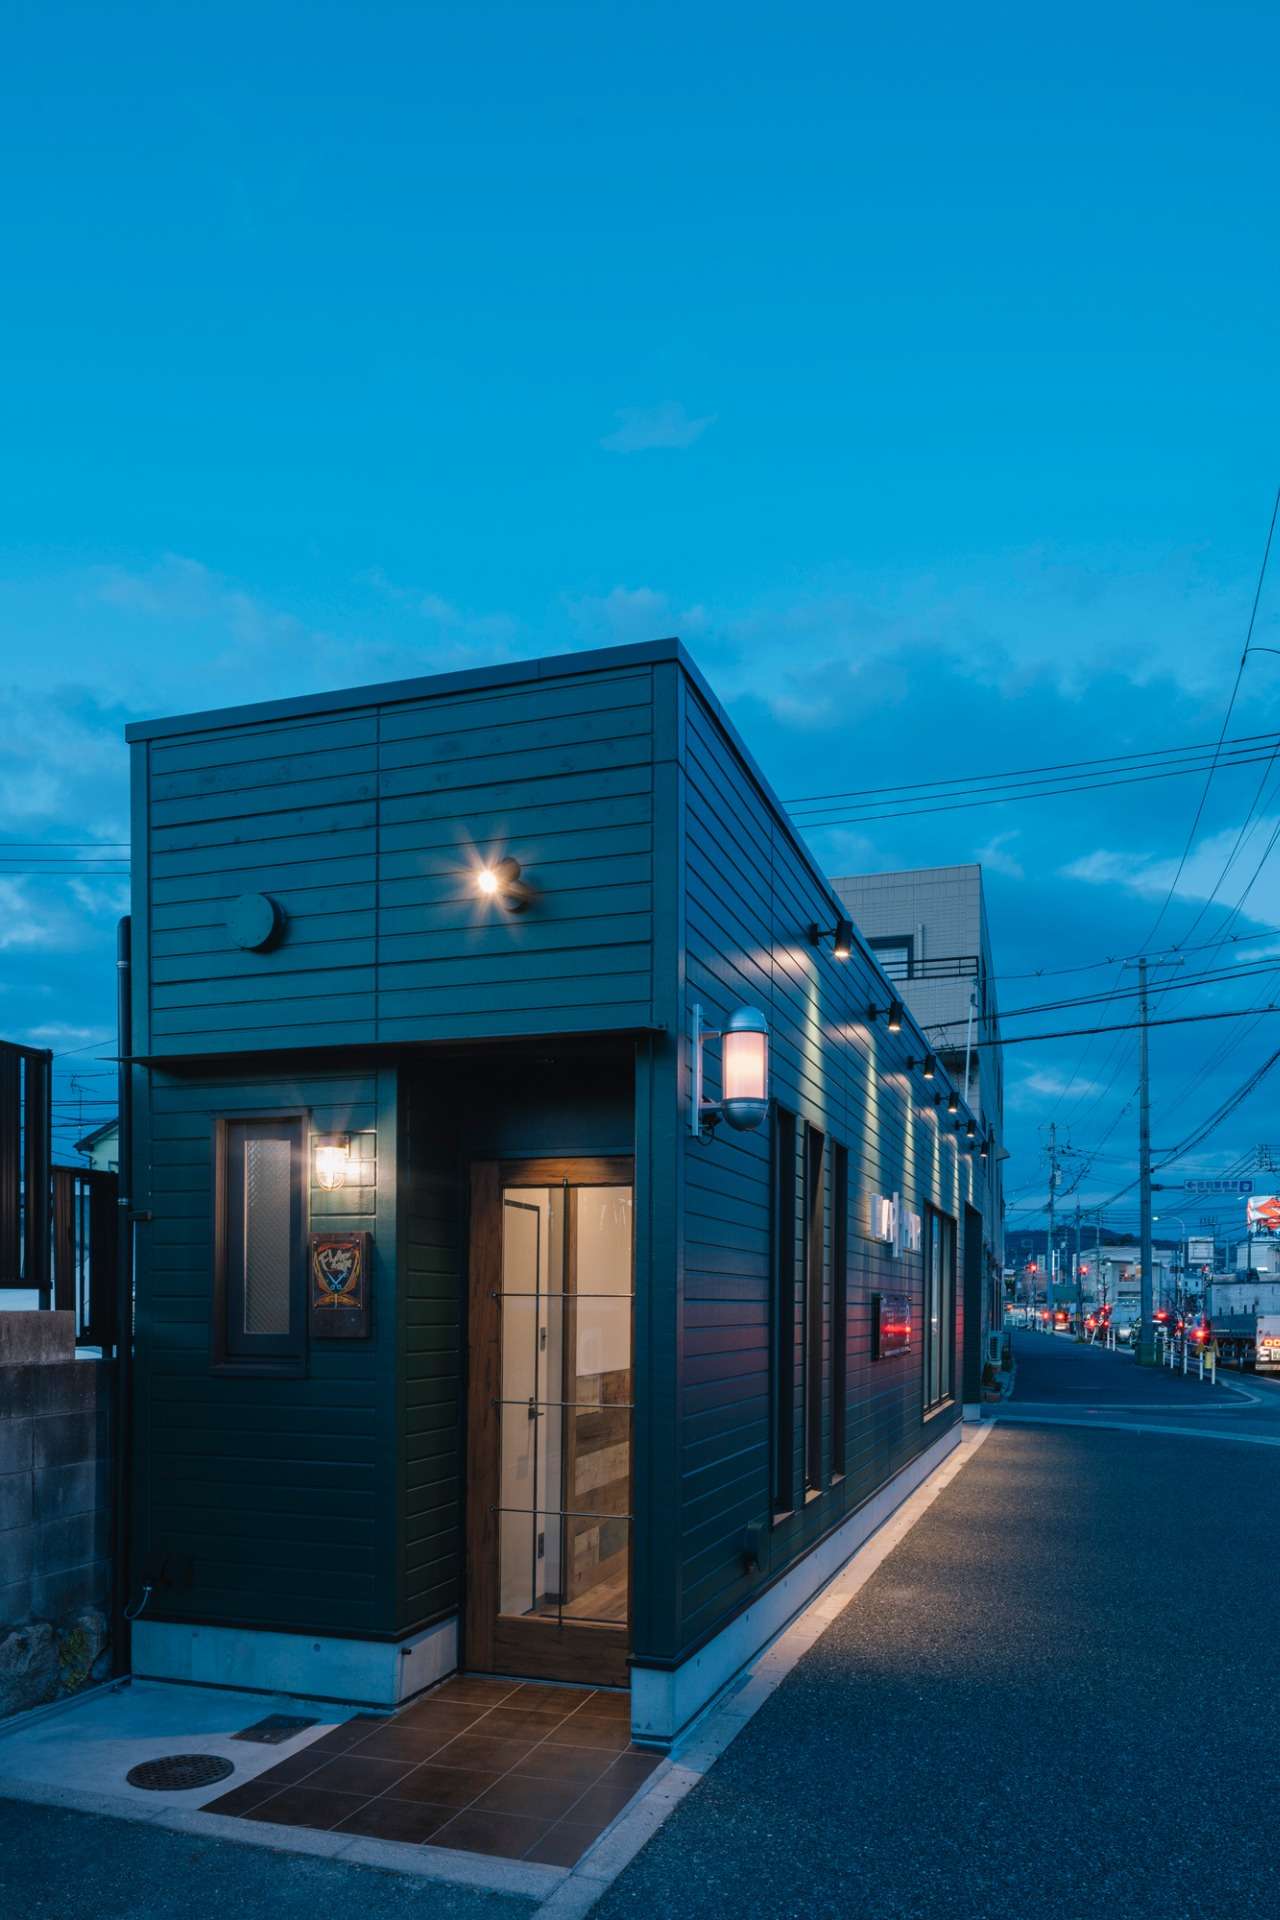 オフィスデザイン、クリニック、美容室などおしゃれな店舗設計、店舗デザインは広島の設計事務所asazu design office